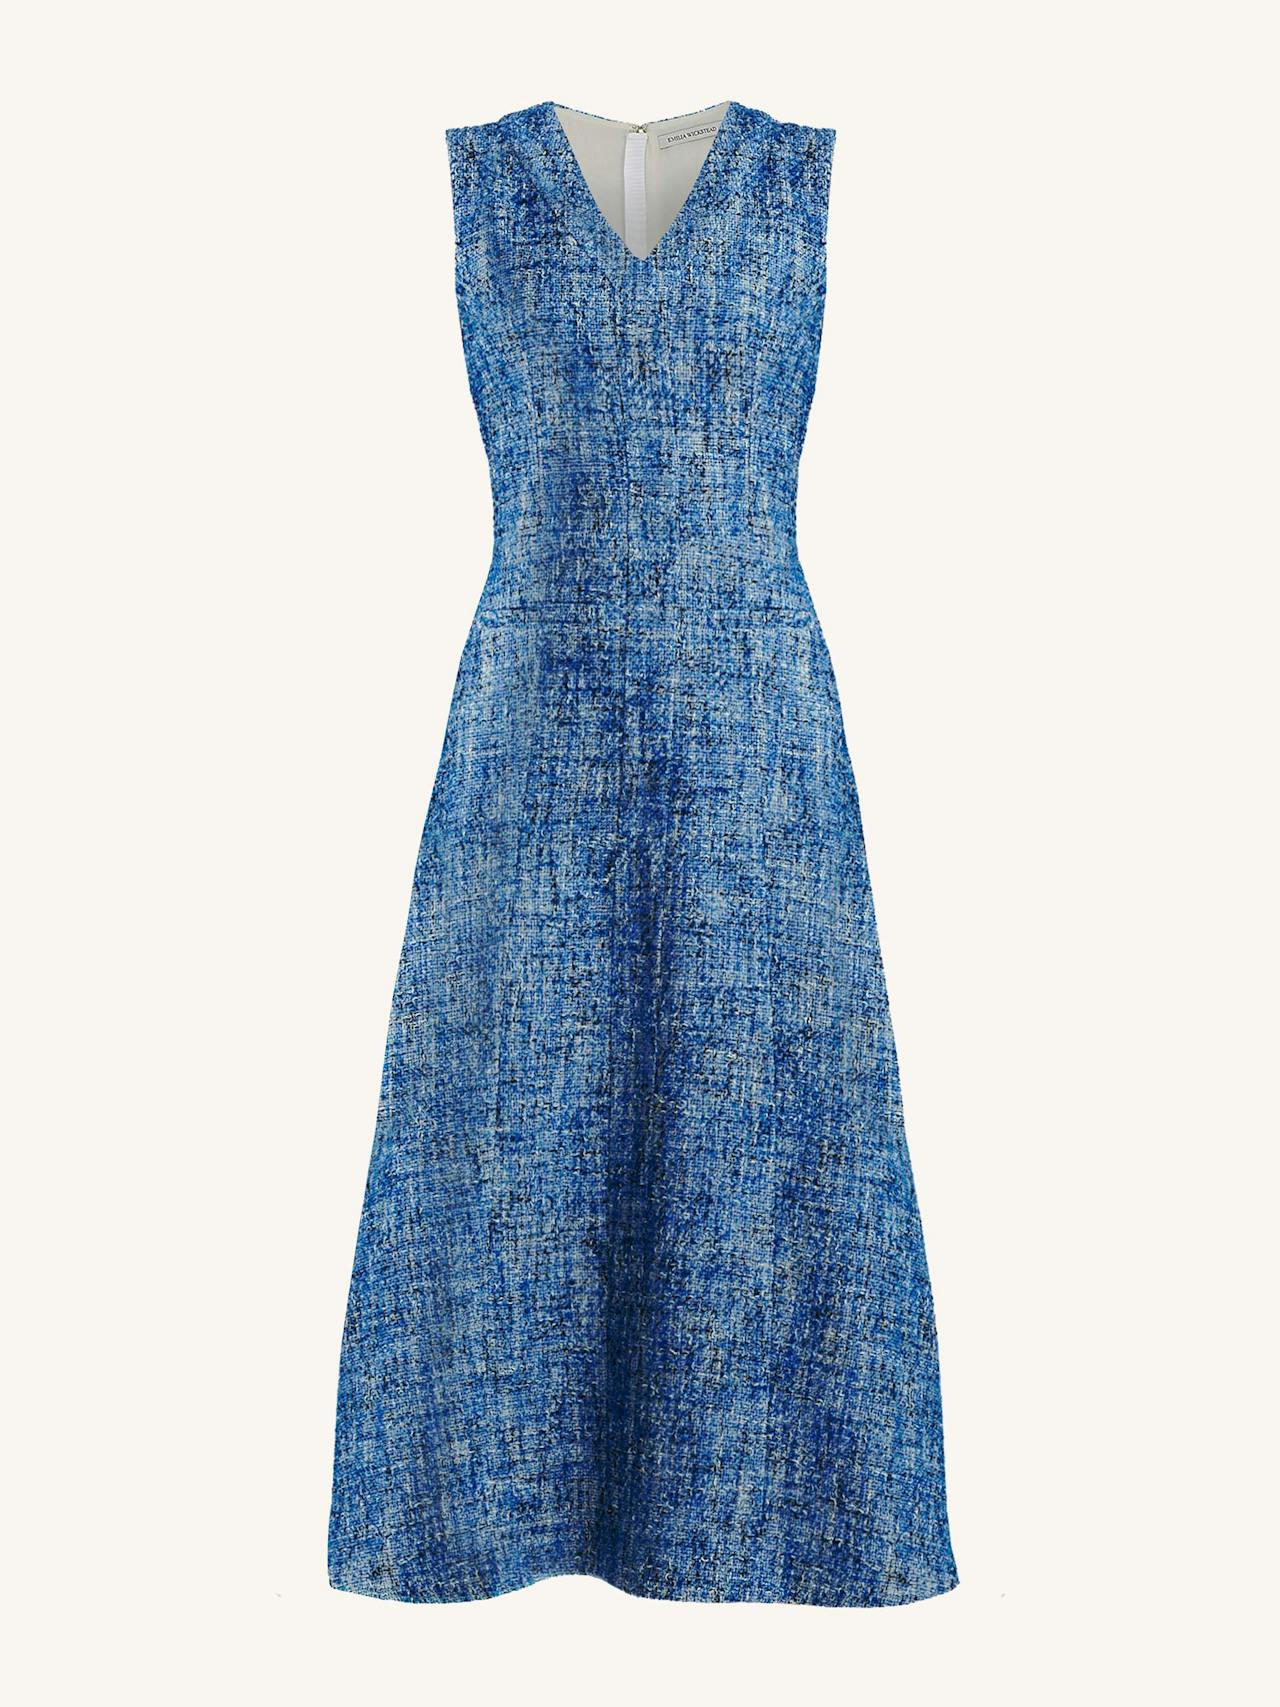 Mio dress in blue cotton tweed